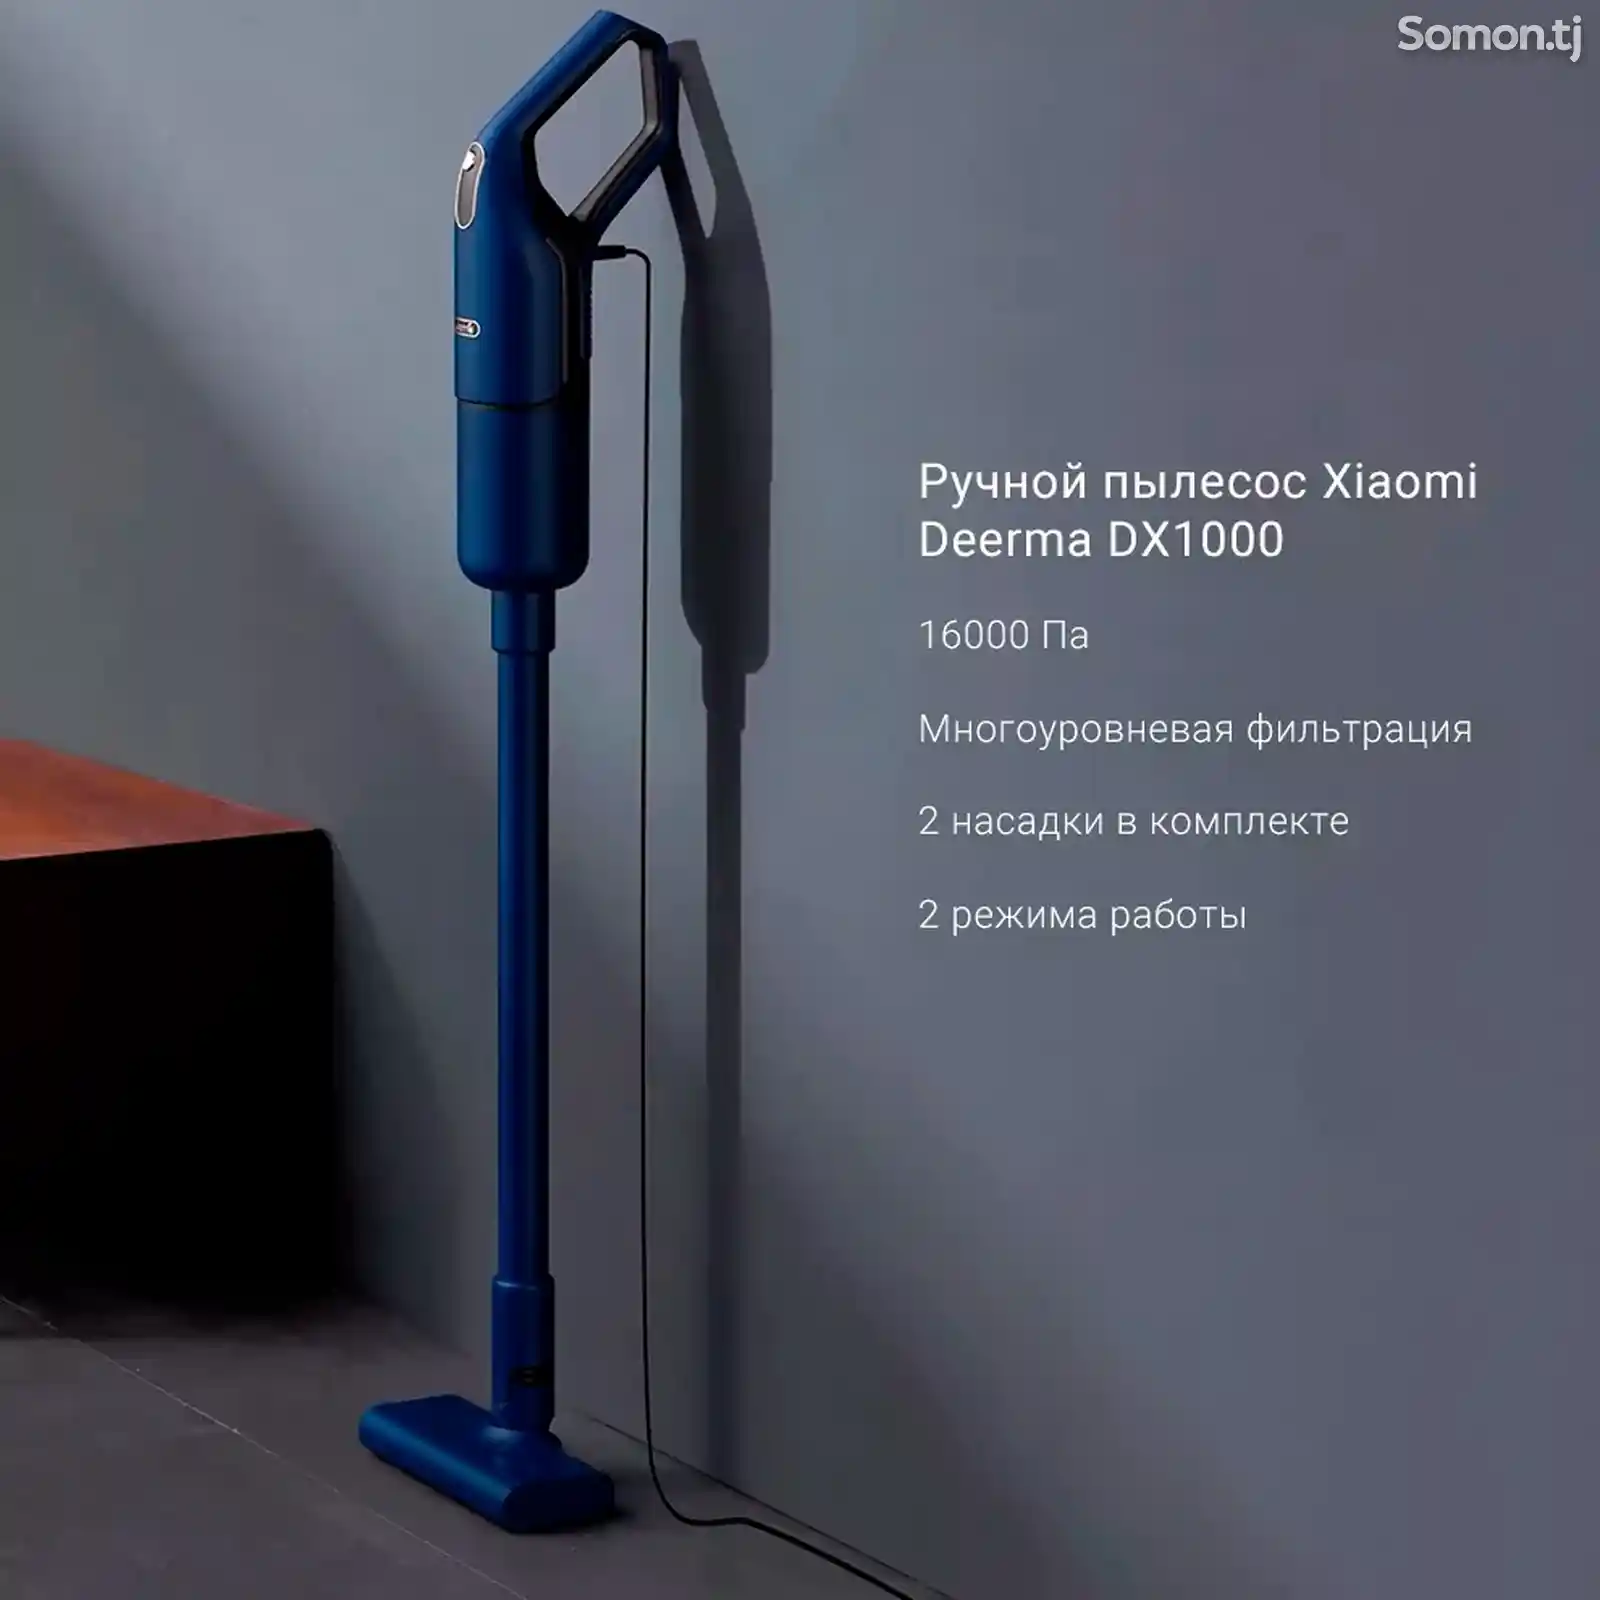 Пылесос вертикальный Deerma DX1000 синий-4